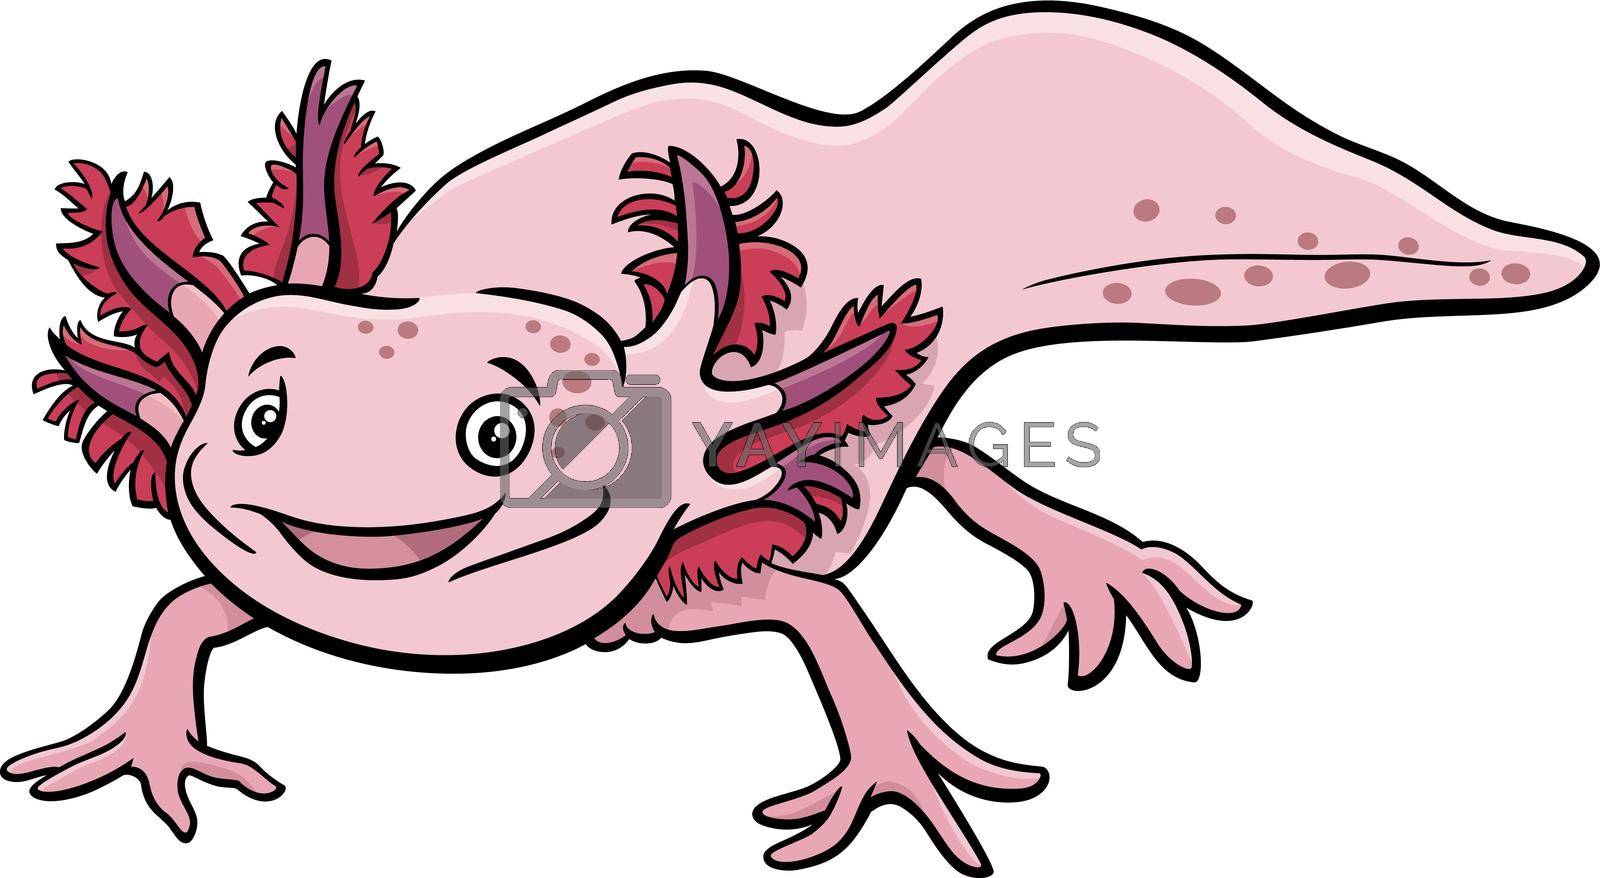 Royalty free image of cartoon axolotl aquatic animal character by izakowski